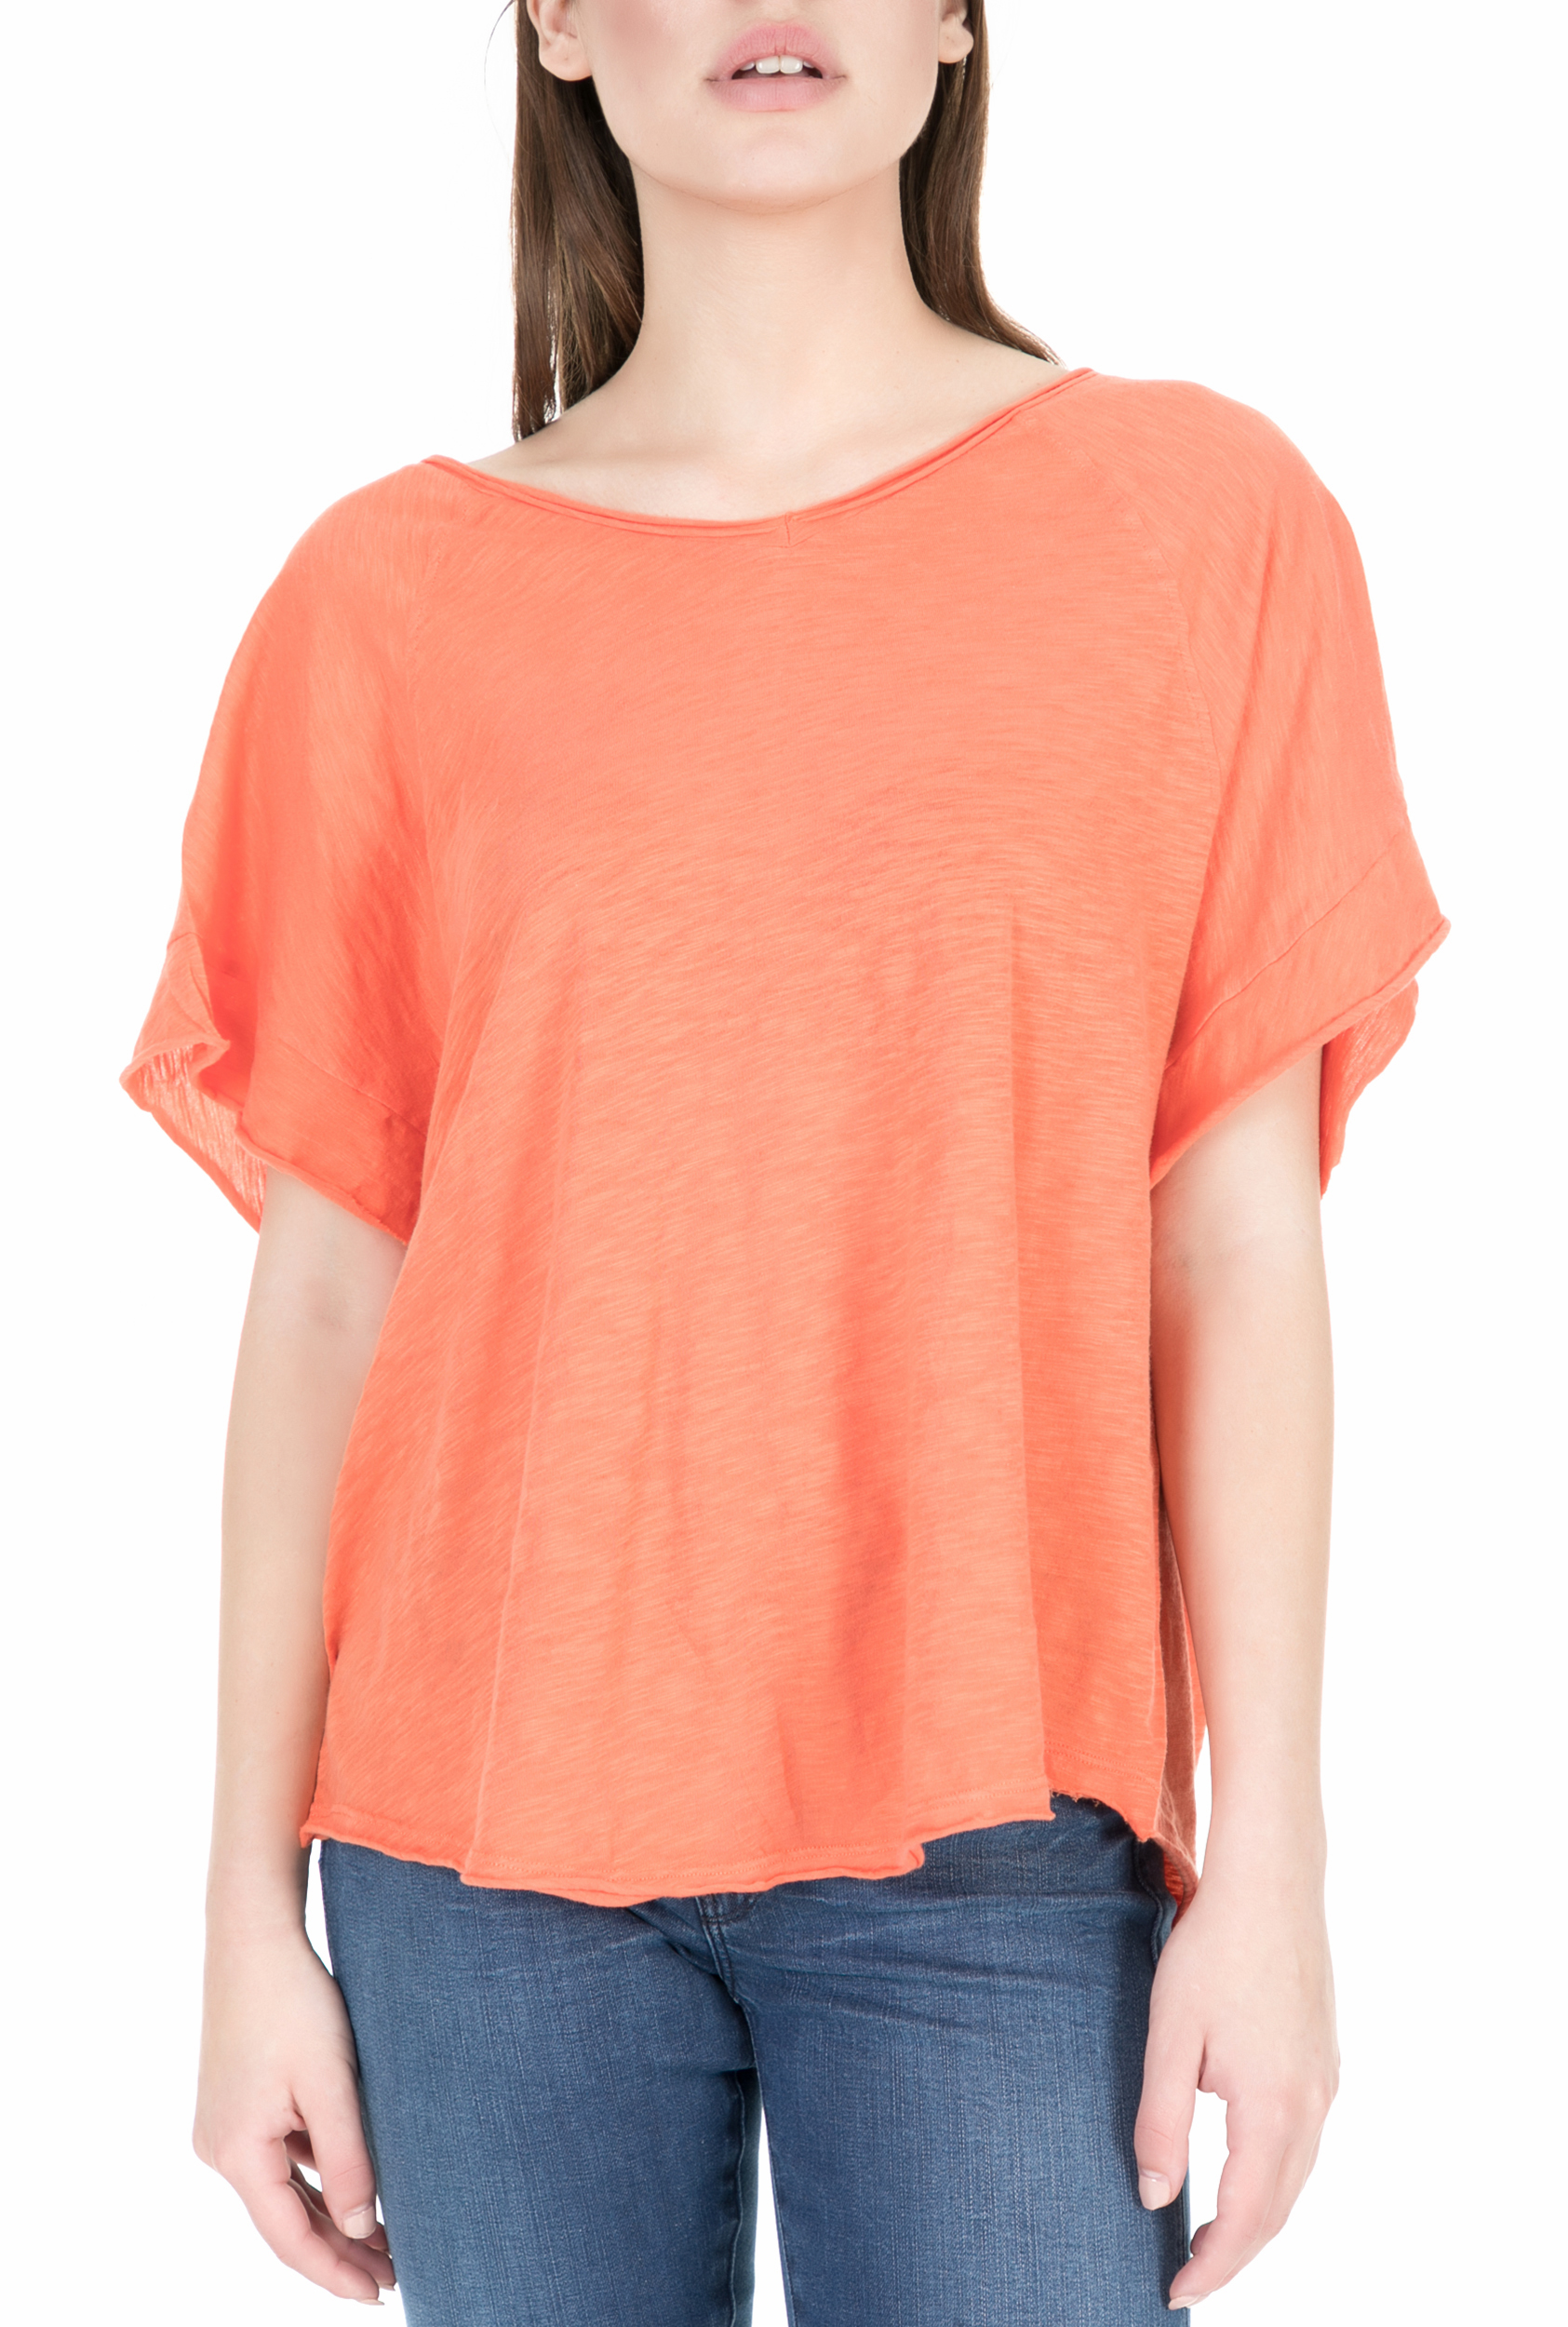 Γυναικεία/Ρούχα/Μπλούζες/Κοντομάνικες AMERICAN VINTAGE - Γυναικεία κοντομάνικη μπλούζα AMERICAN VINTAGE πορτοκαλί